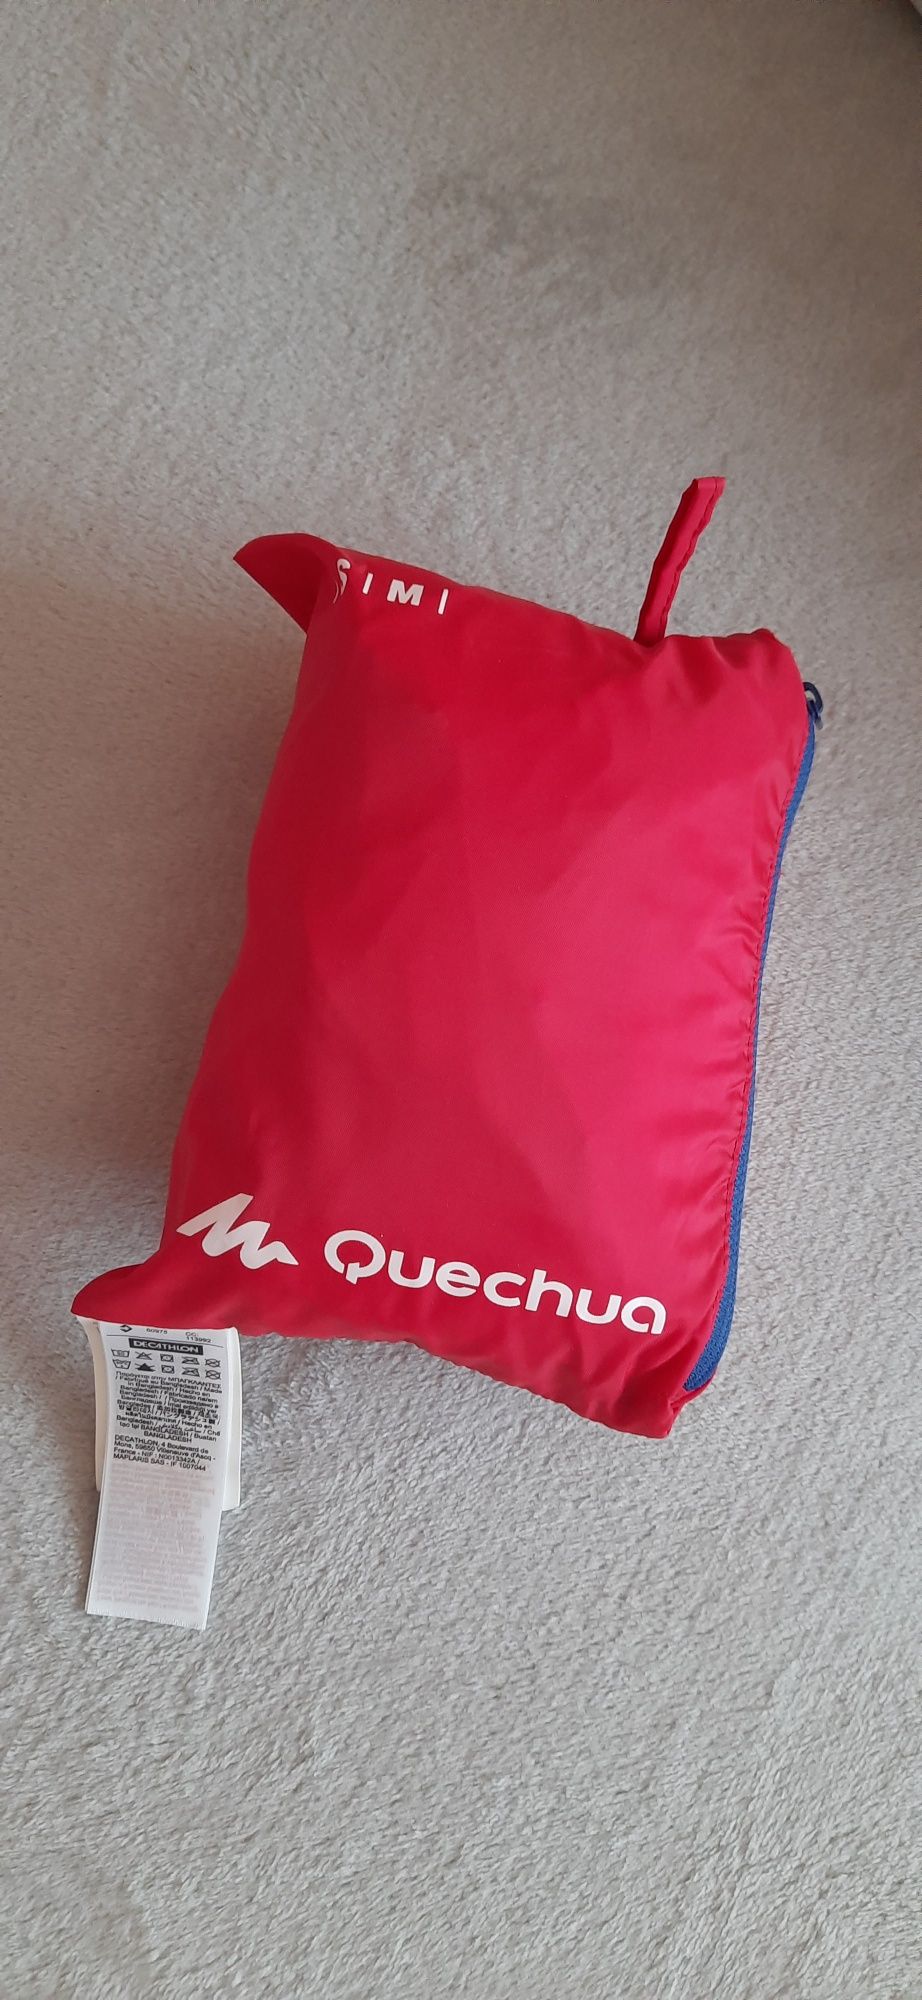 Quechua nowa kurtka przeciwdeszczowa damska S/M pakowana do kieszeni